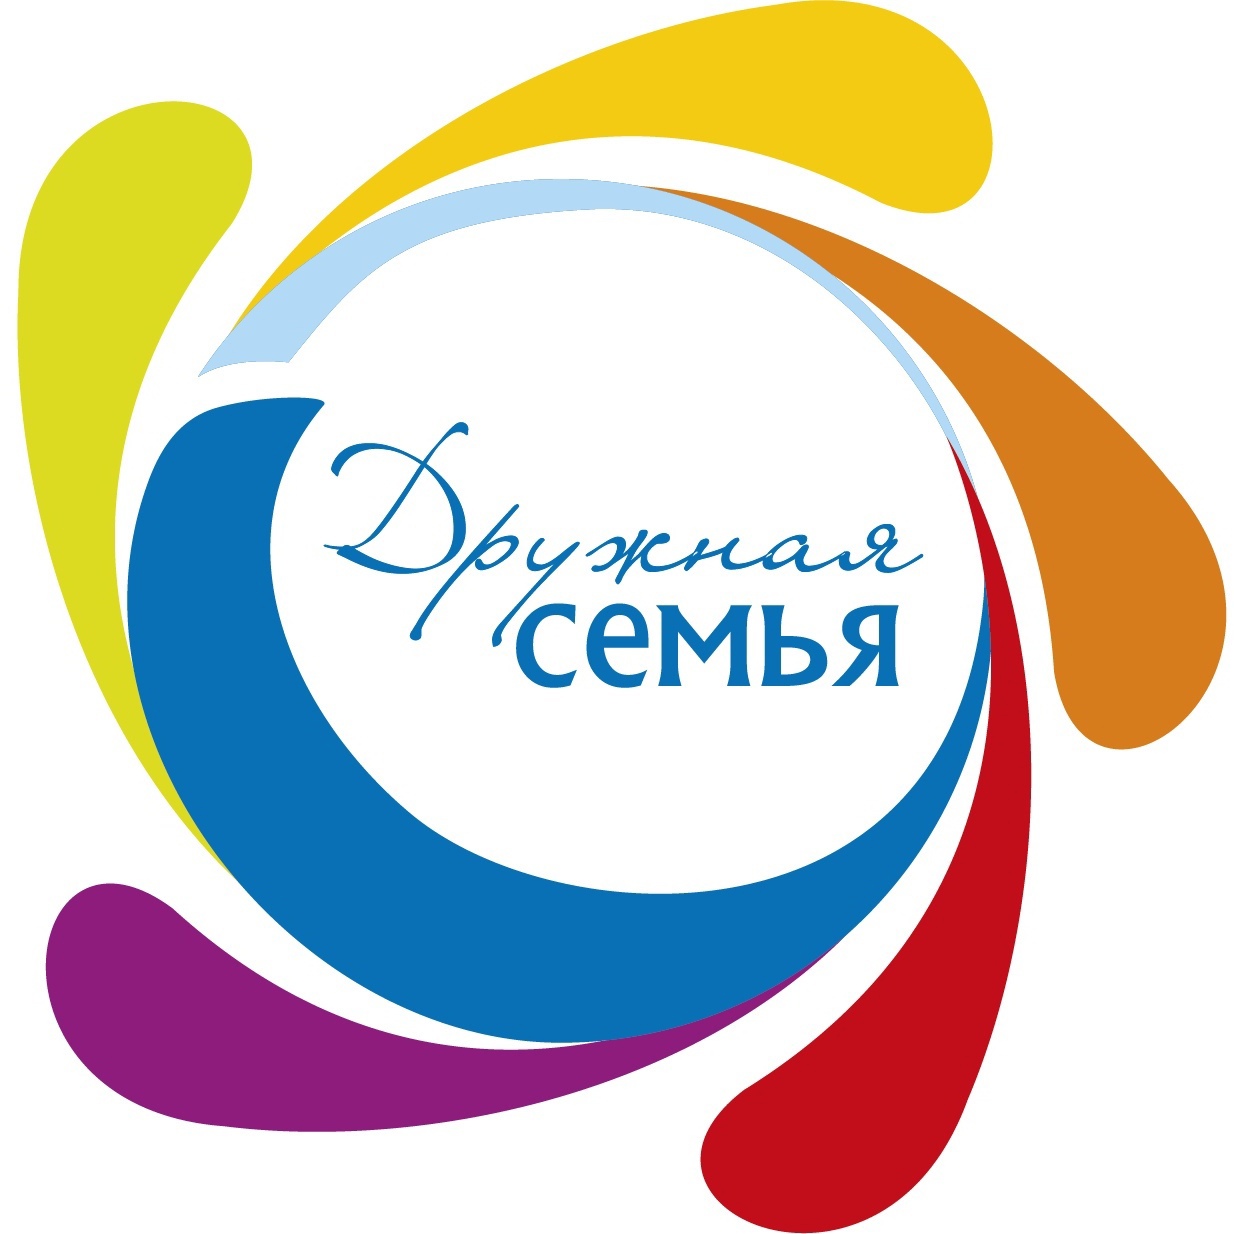 Проводится областной конкурс логотипов  «Моя семья - Нижегородская семья»